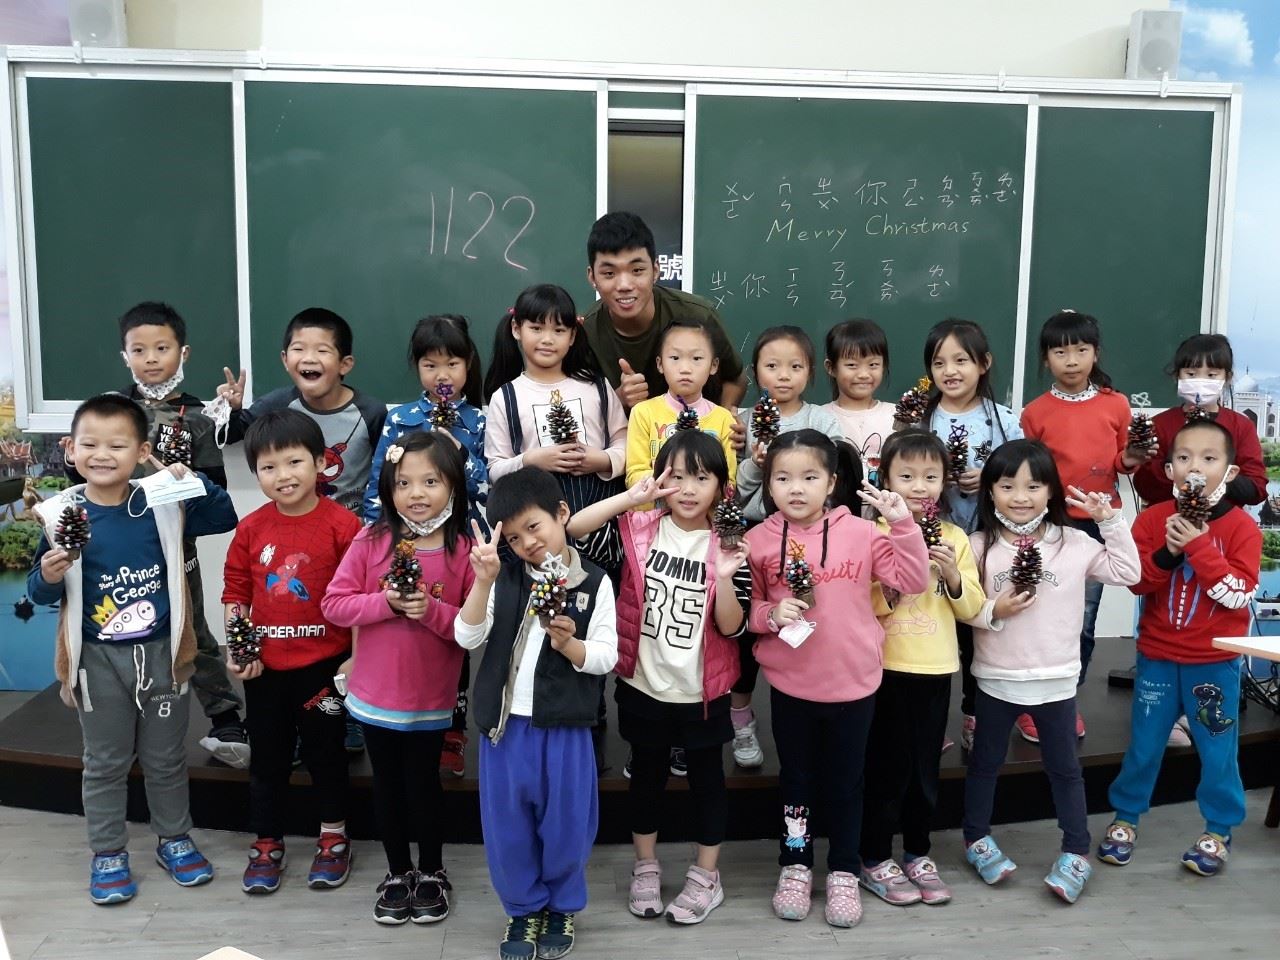 โรงเรียนประถมศึกษาเฉิงกงมณฑลเหมี๋ยวลี่จัดกิจกรรมแลกเปลี่ยนวัฒนธรรมกับเหงียน มินห์แวน นักเรียนชาวเวียดนามวัย 19 ปีมาไต้หวันเพื่อศึกษาภาษาจีน (ภาพจาก รัฐบาลมณฑลเหมี๋ยวลี่)